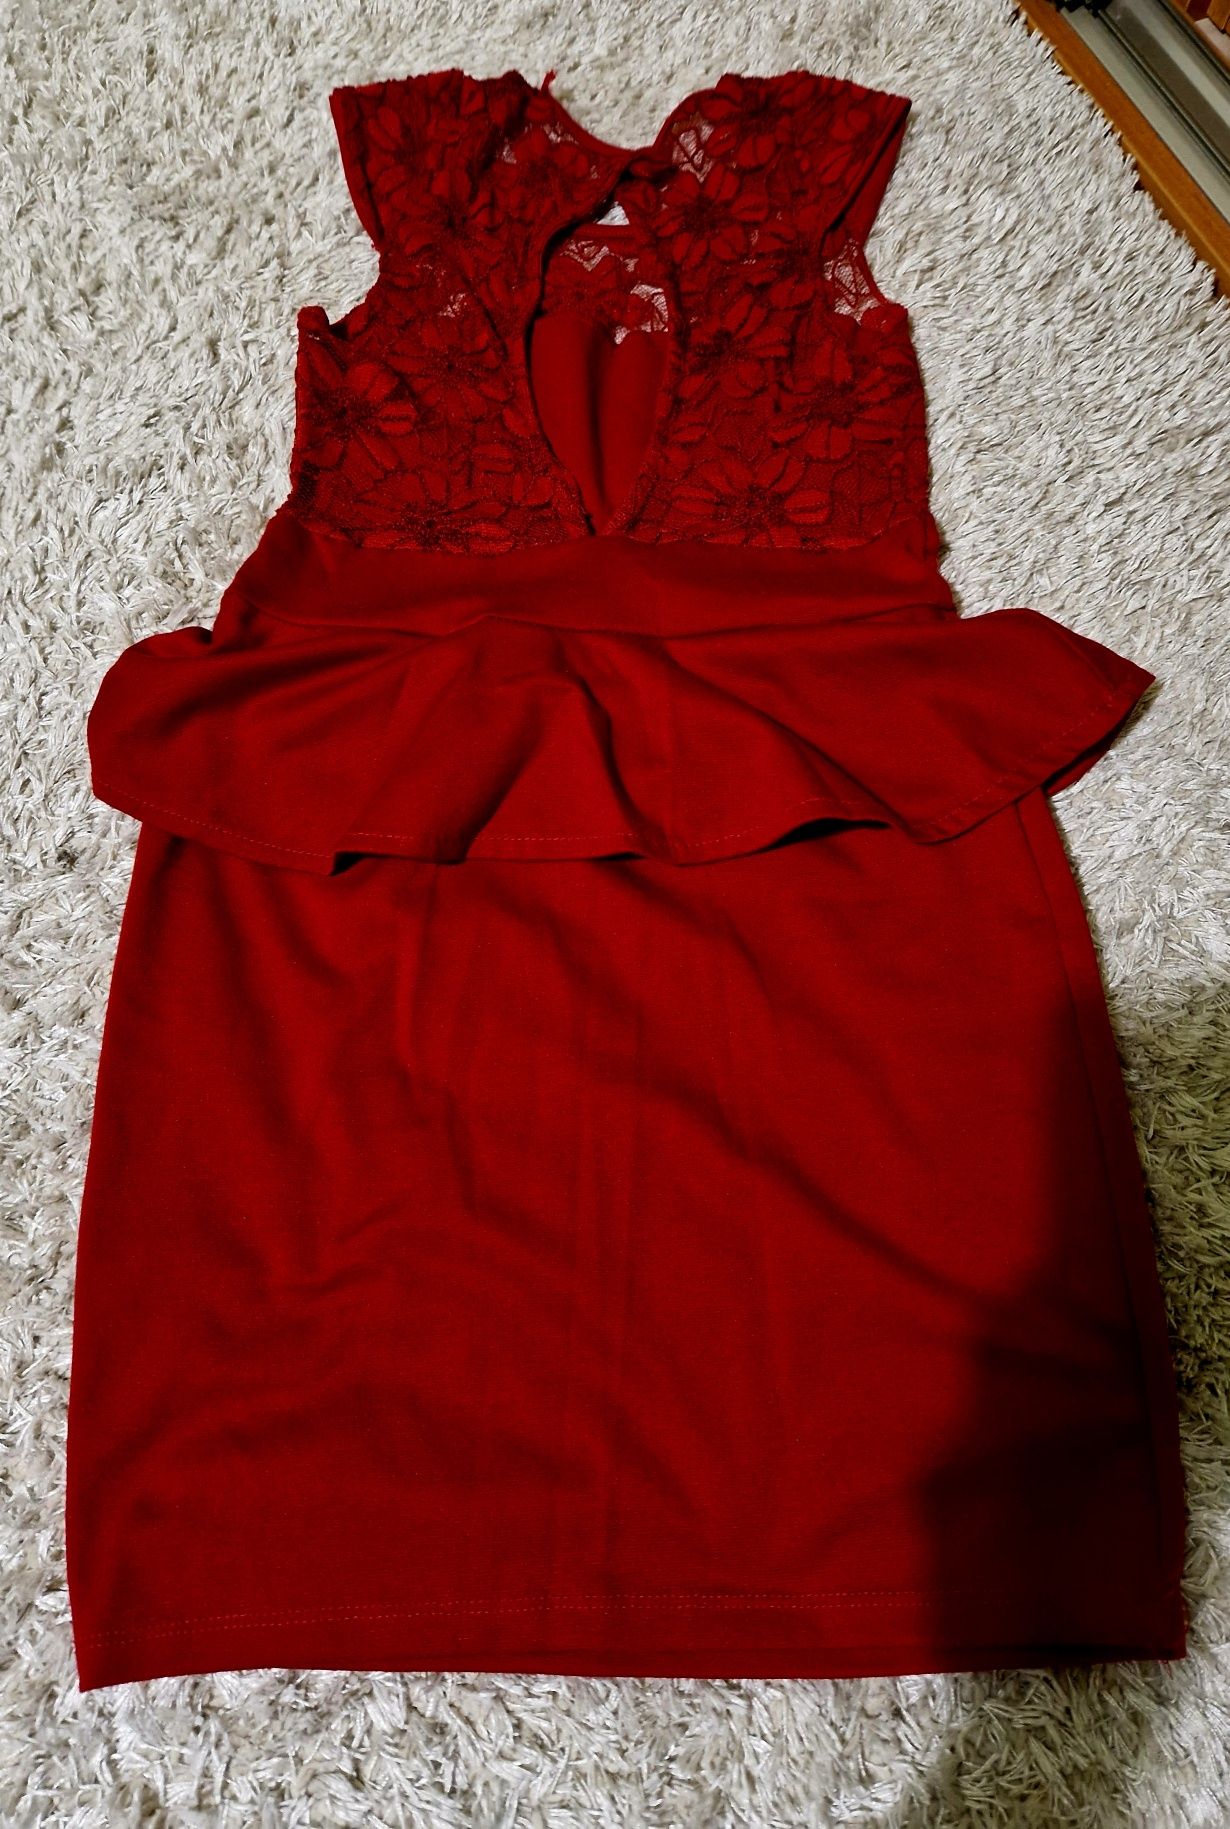 Sukienka elegancka,bordowa z koronką, rozmiar M, 38